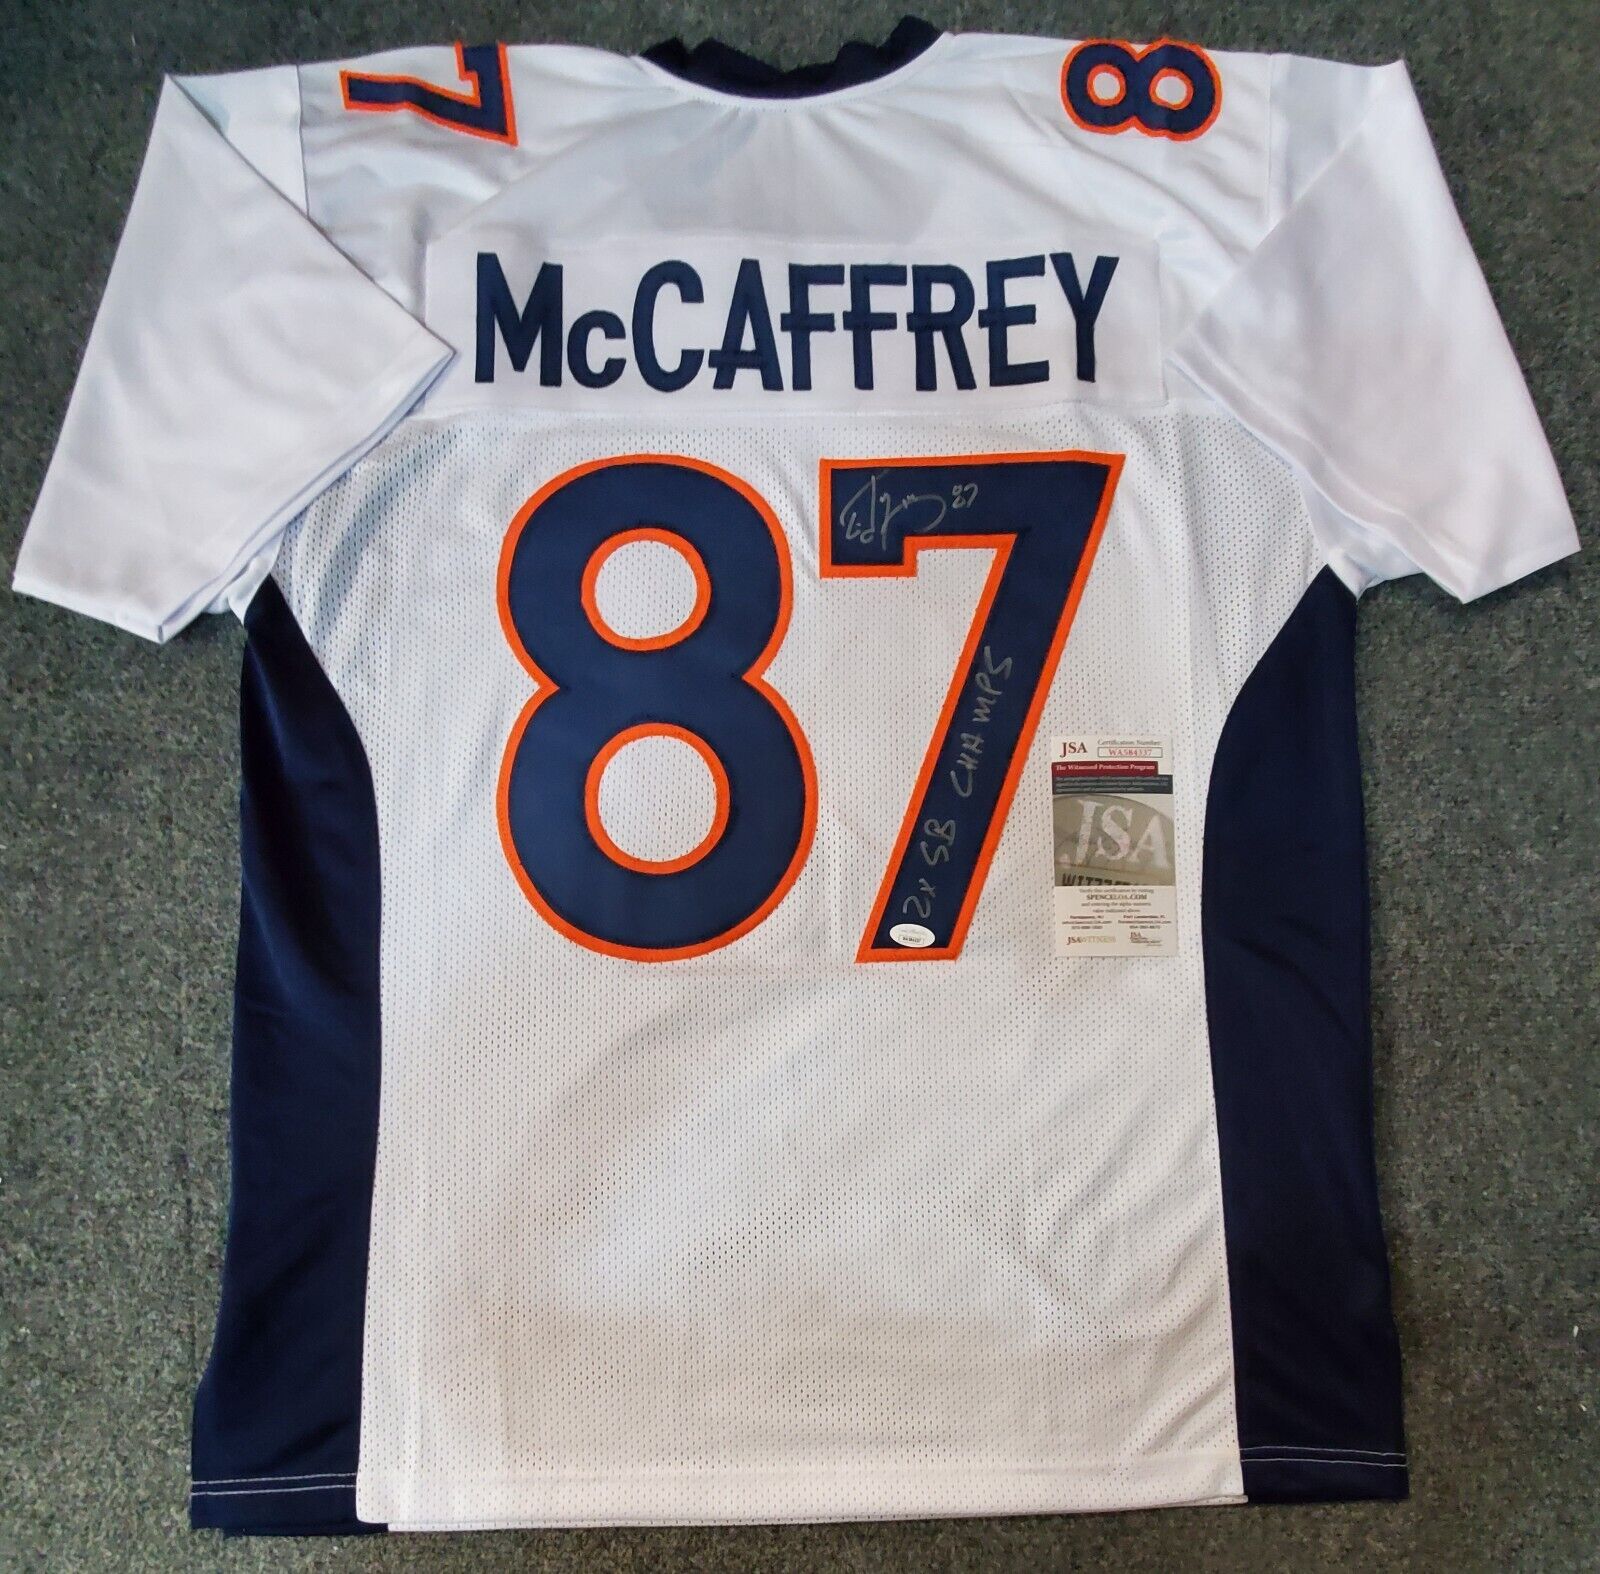 Denver Broncos Ed Mccaffrey Autographed Signed Inscribed Jersey